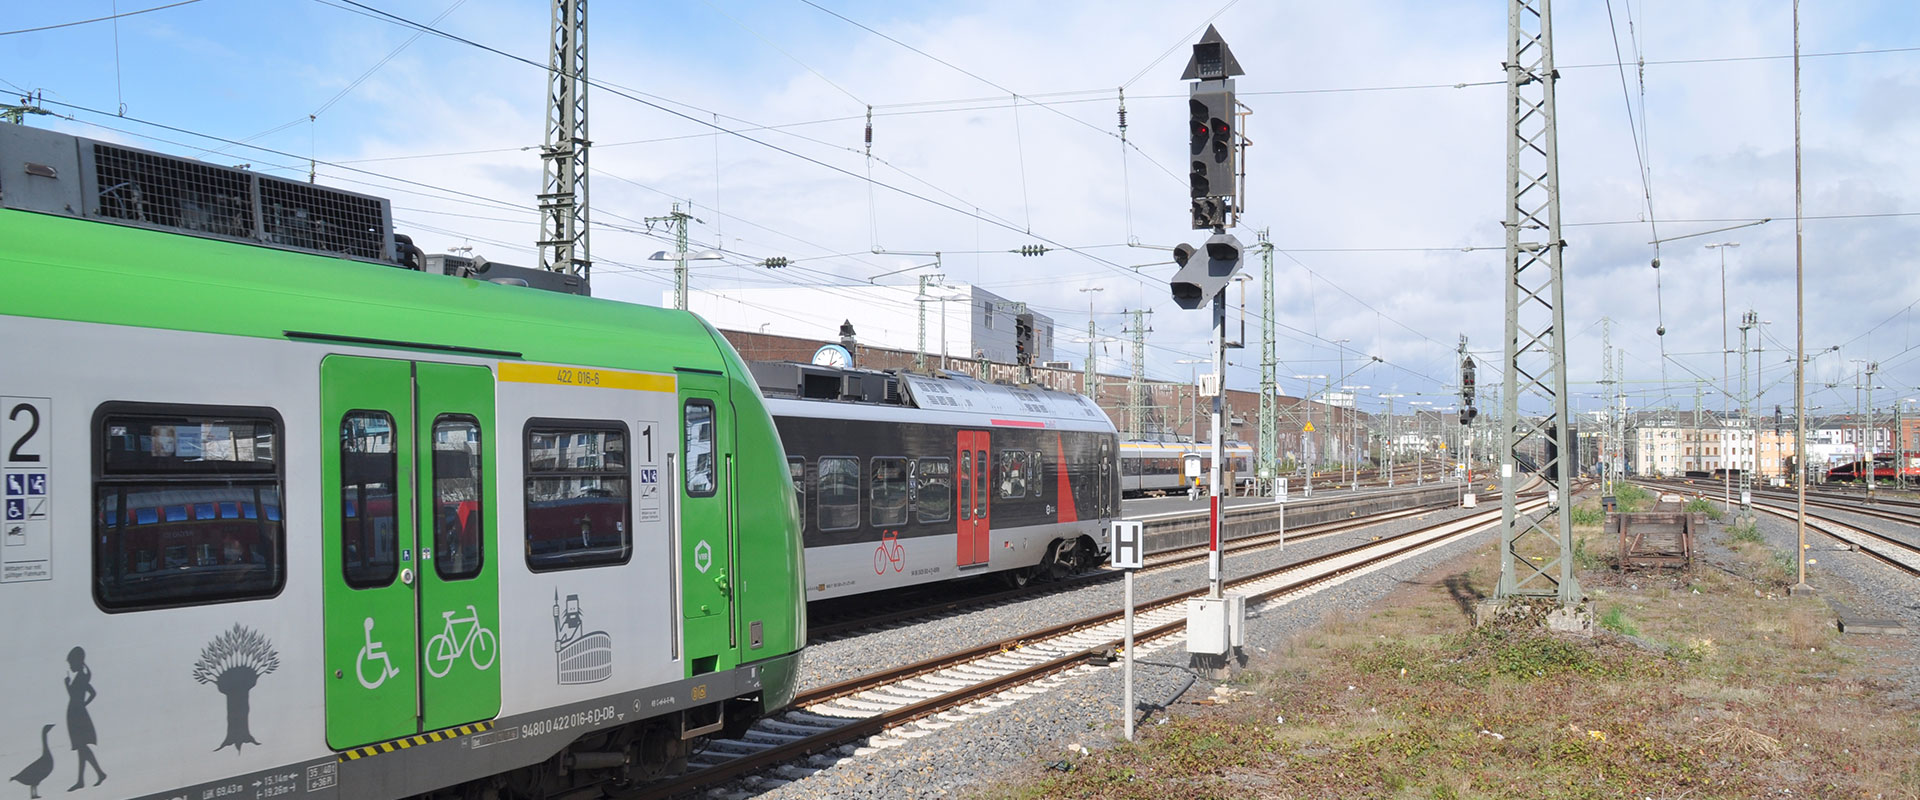 Drei Züge von unterschiedlichen Verkehrsunternehmen verlassen parallel einen Bahnhof